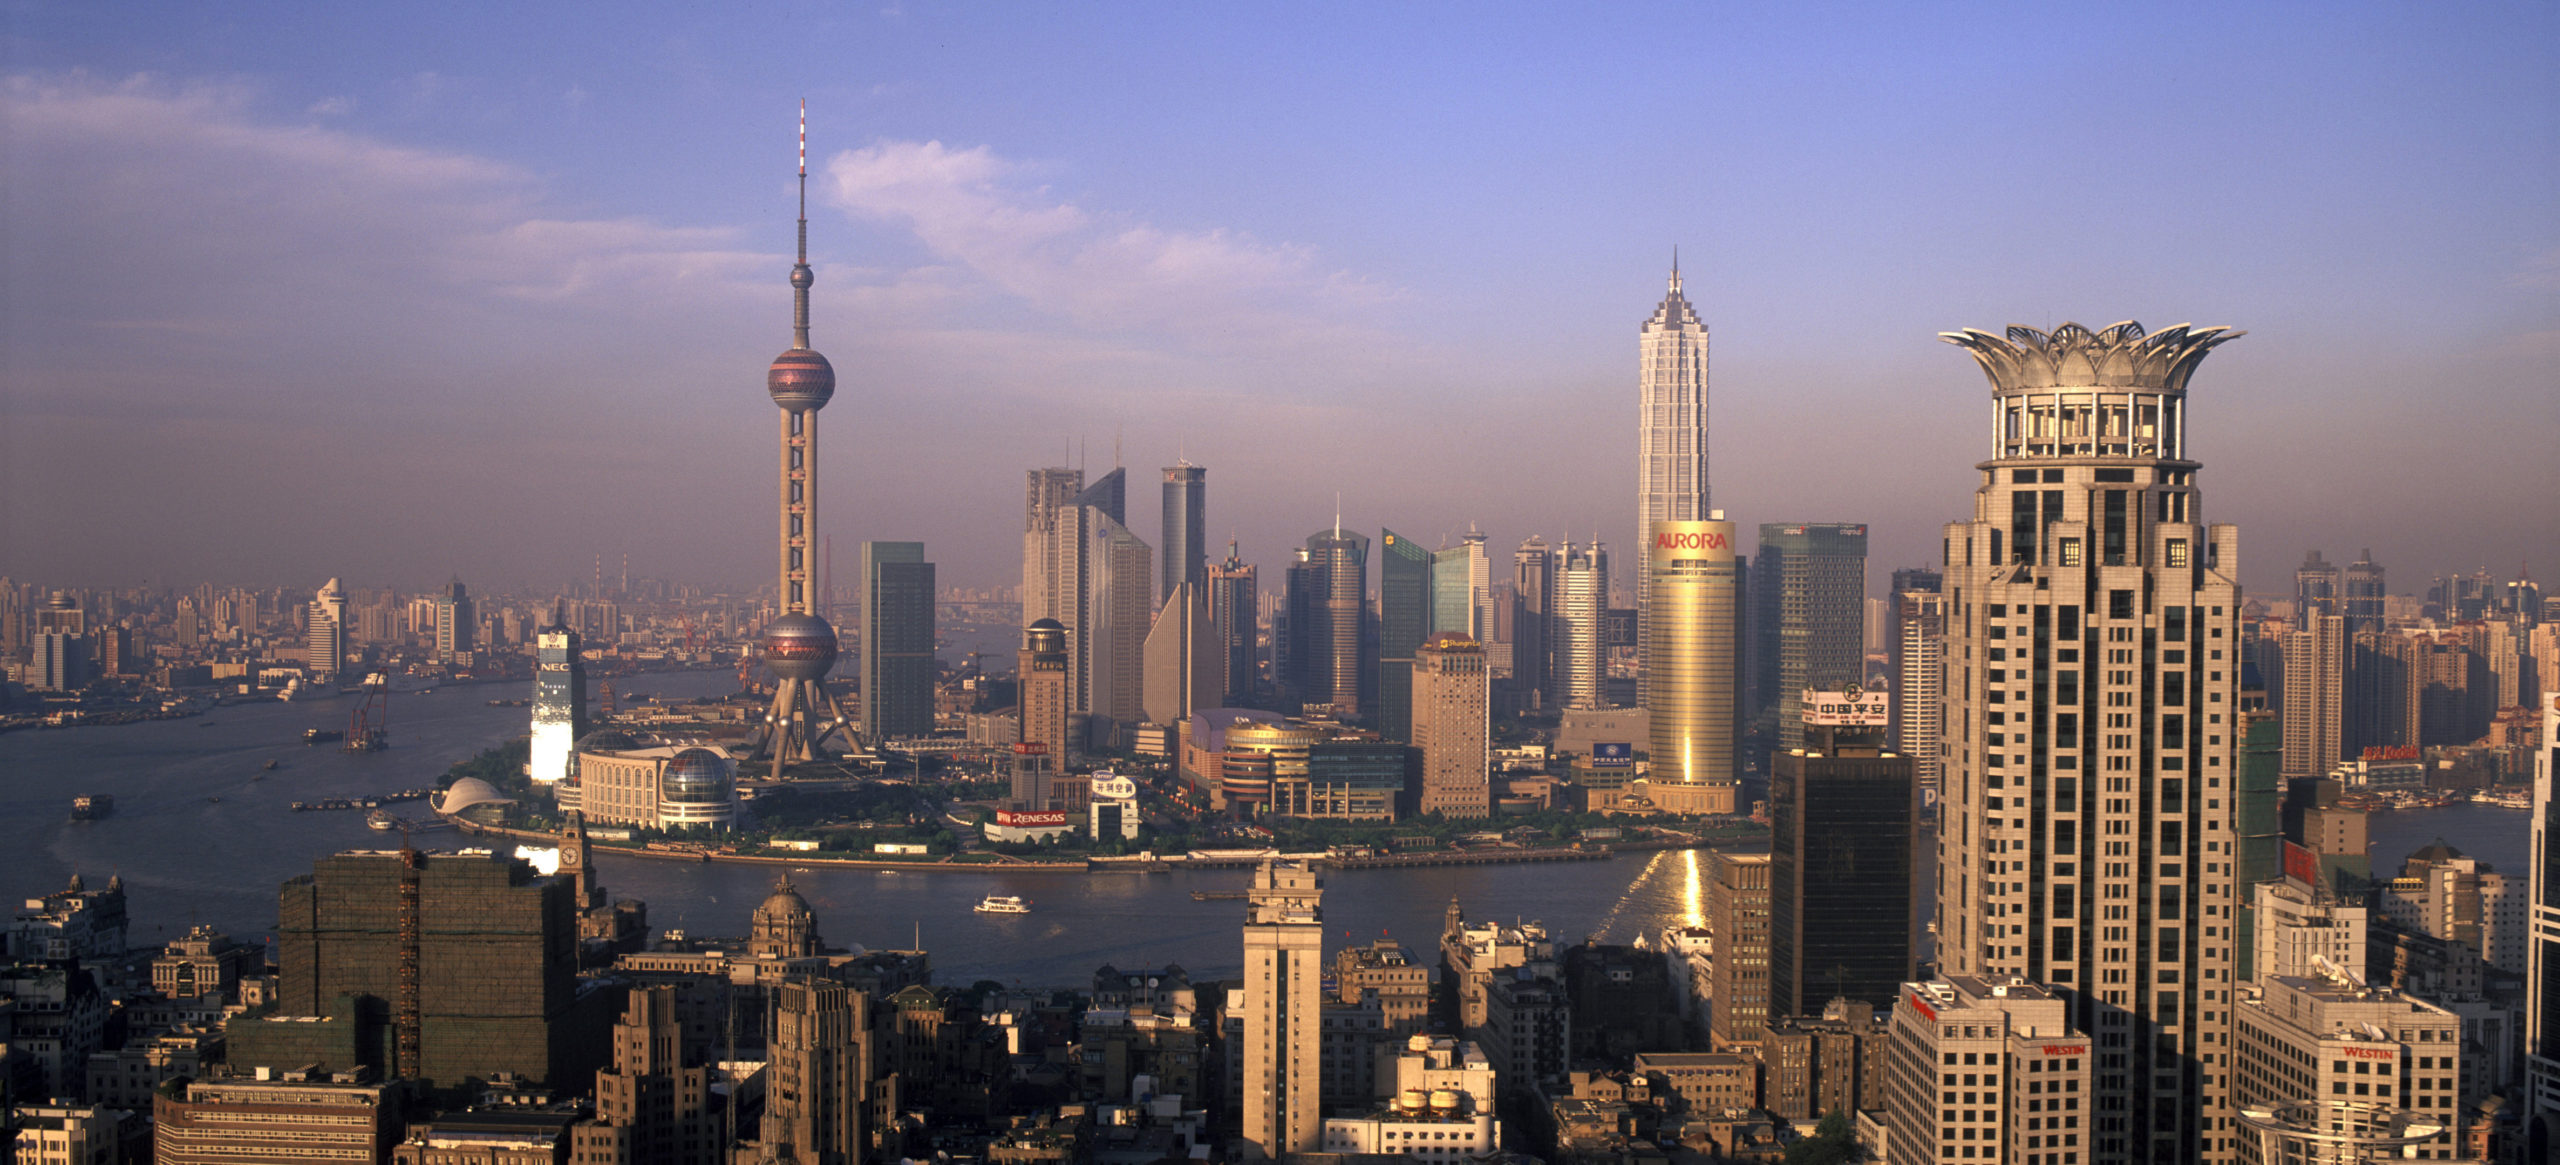 Shanghai Programs: Easier to Navigate, Full of Flexibility